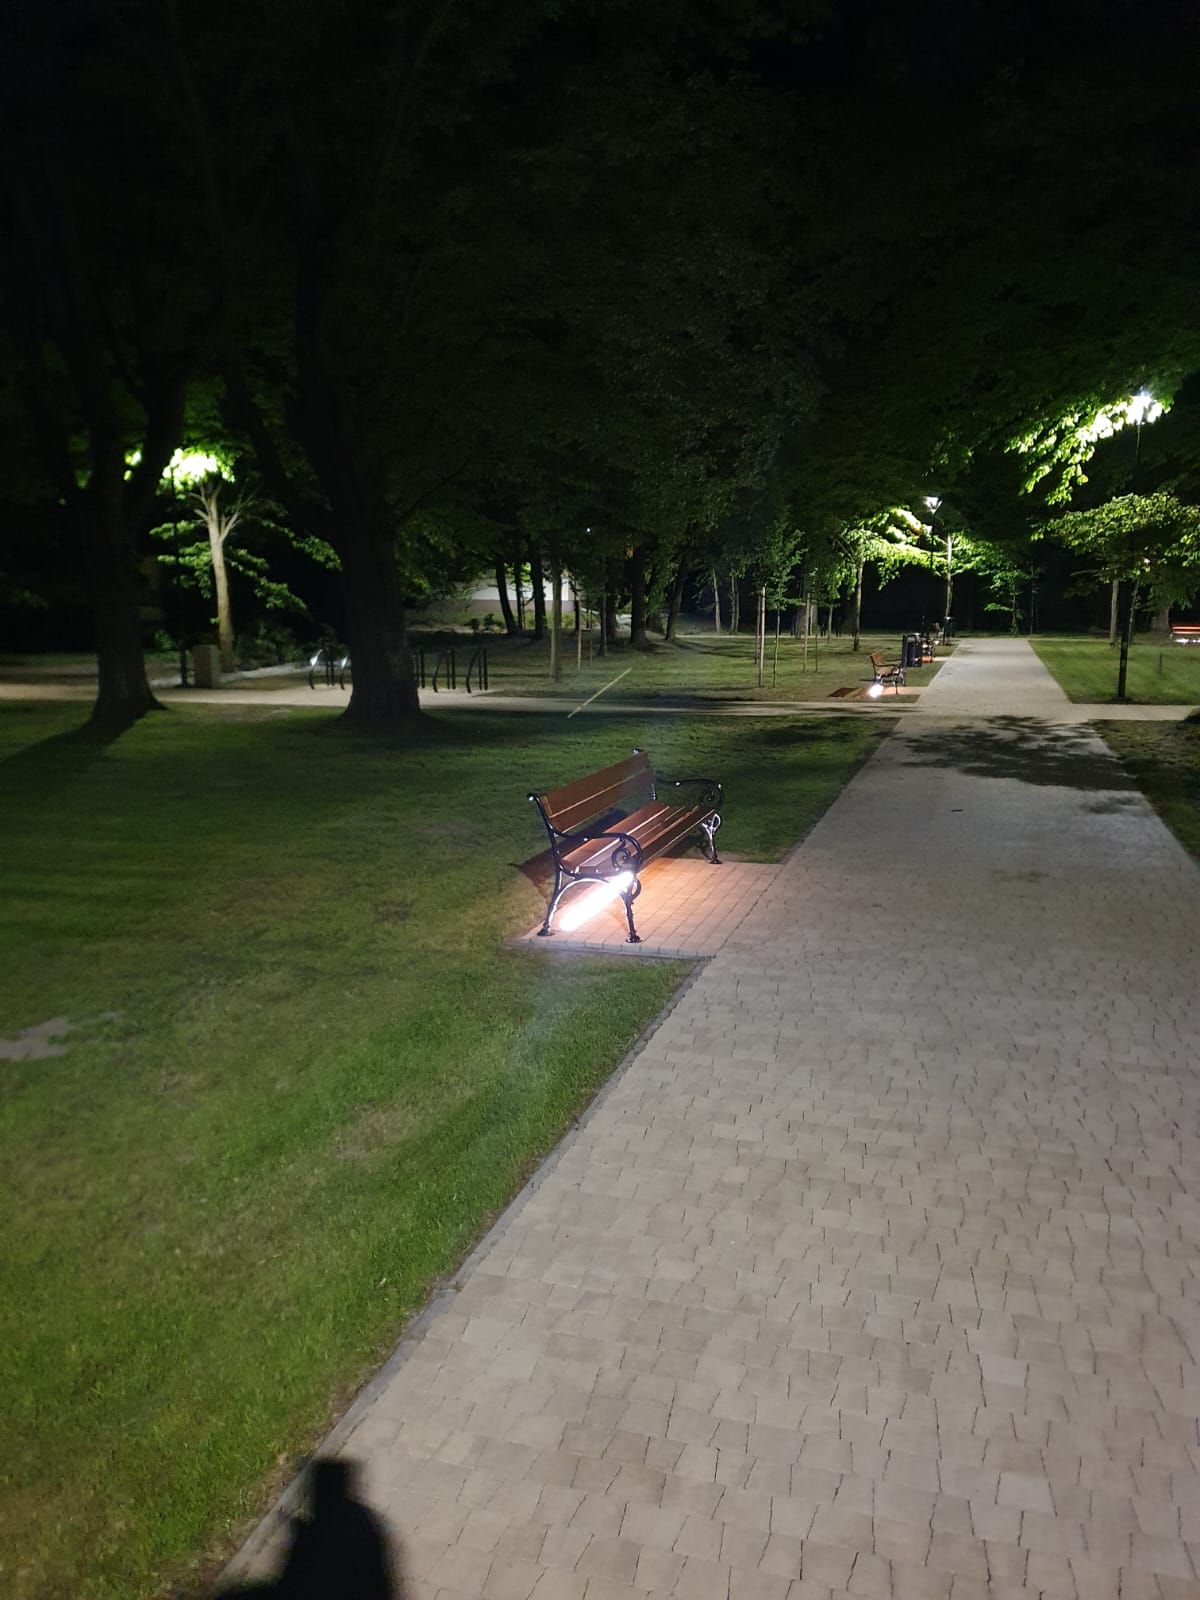 noc, park drzewa i aleje parkowe oświetlone światłem latarni 